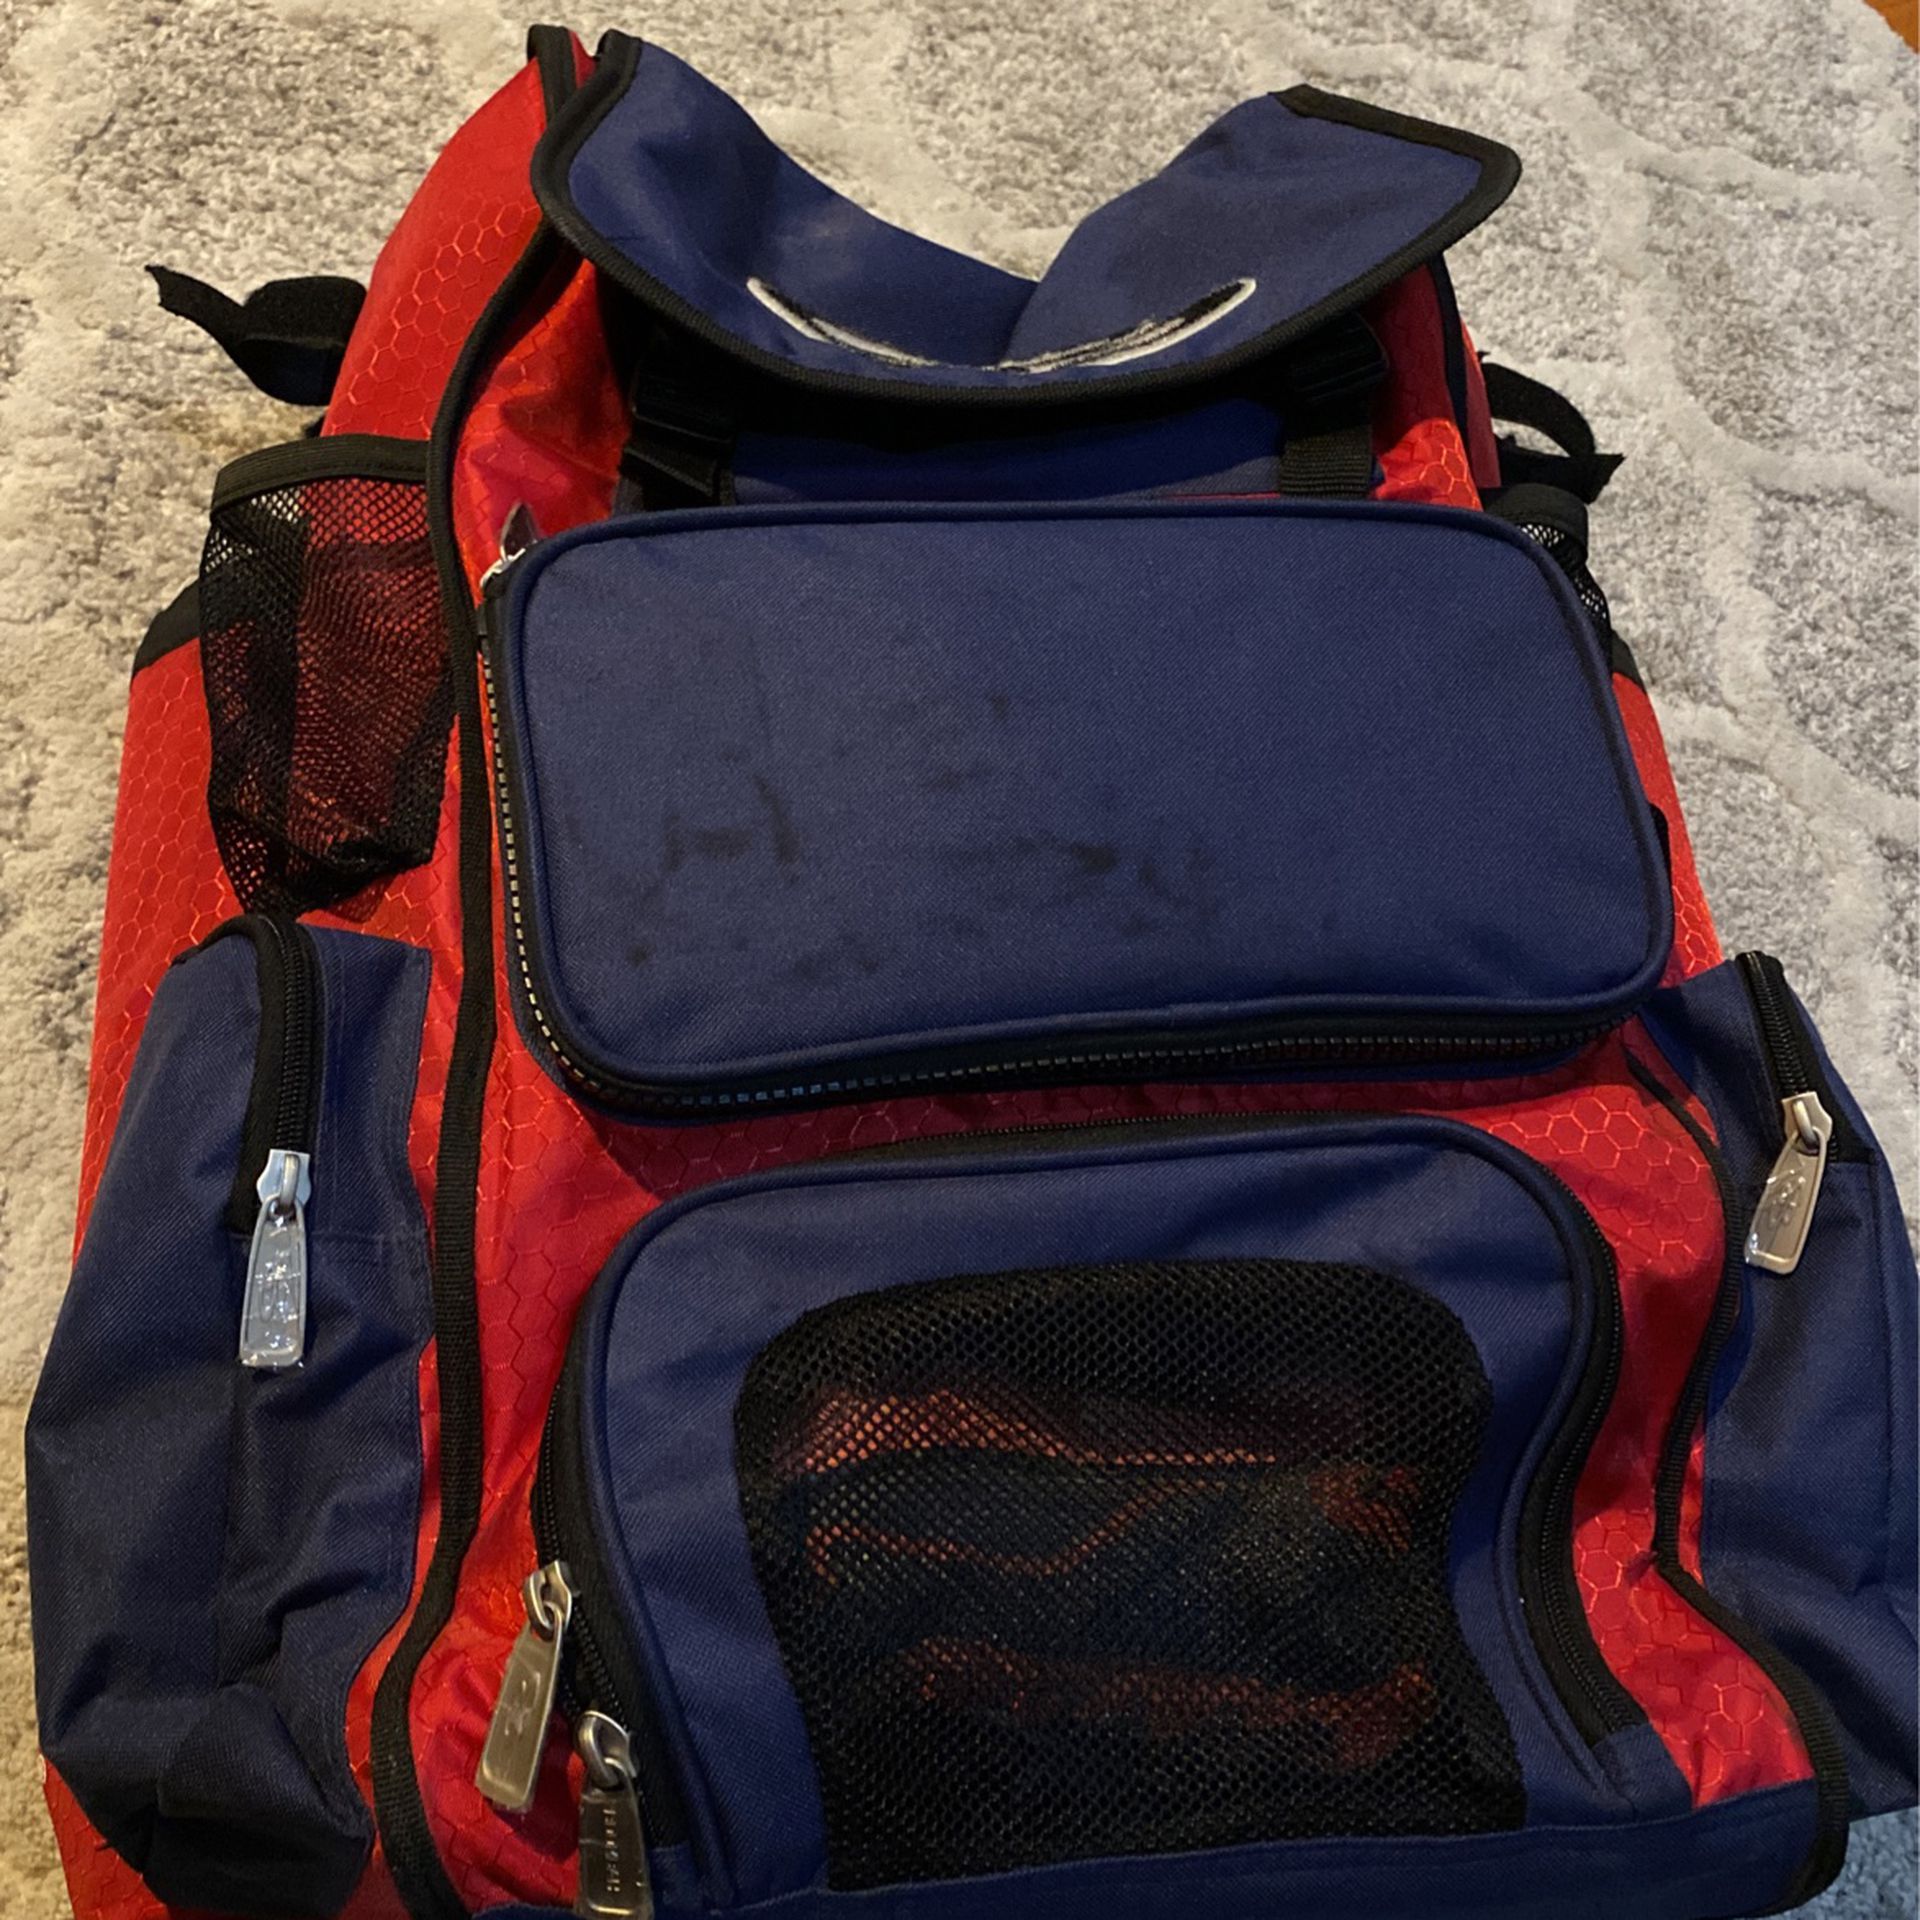 Boombah Backpack For Baseball Or Softball